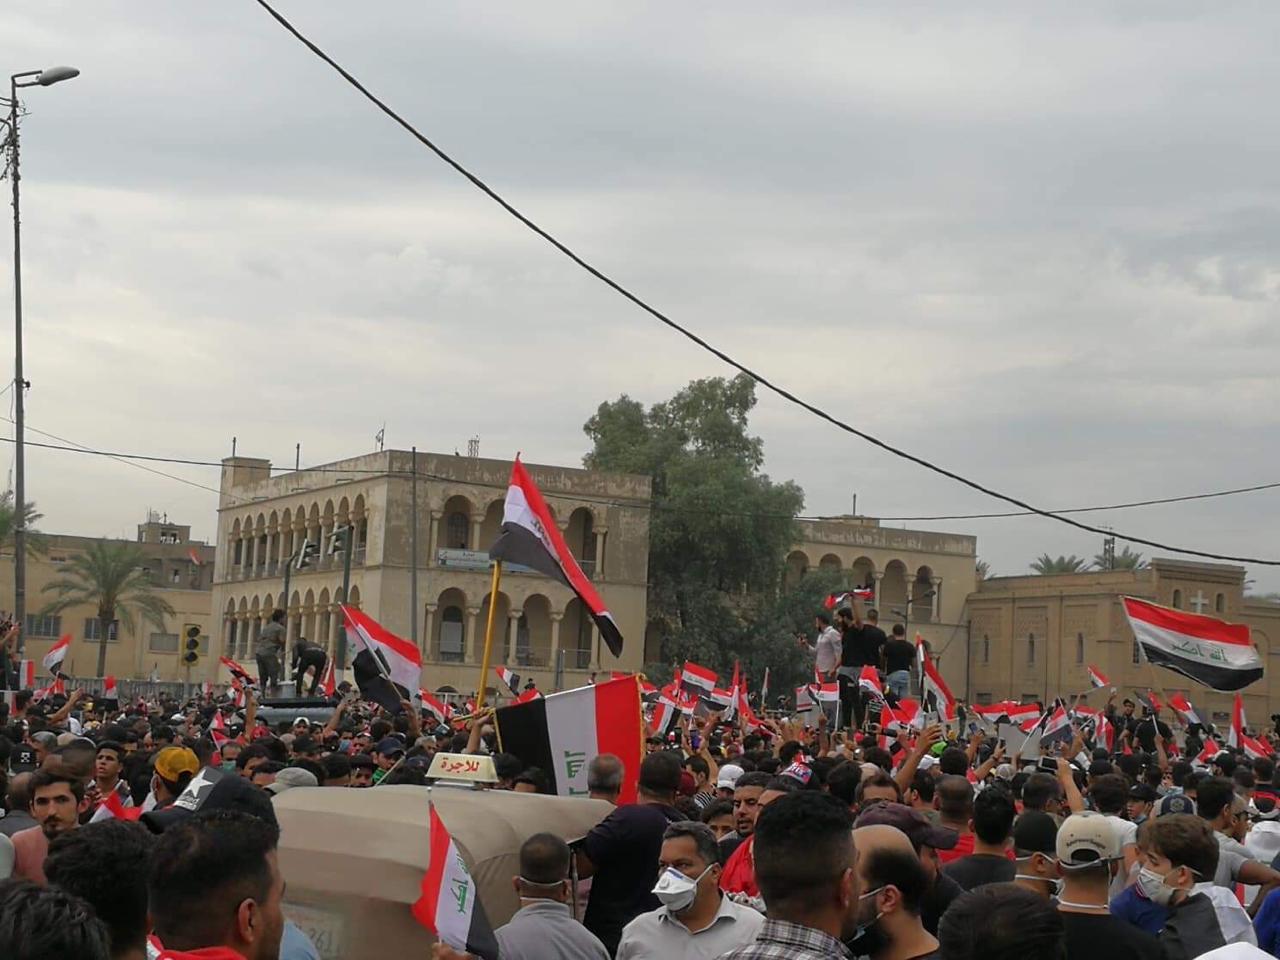 توالي استقالات المسؤولين المحليين وتحالف الصدر يتوعد باستجواب من يمنع التظاهرات